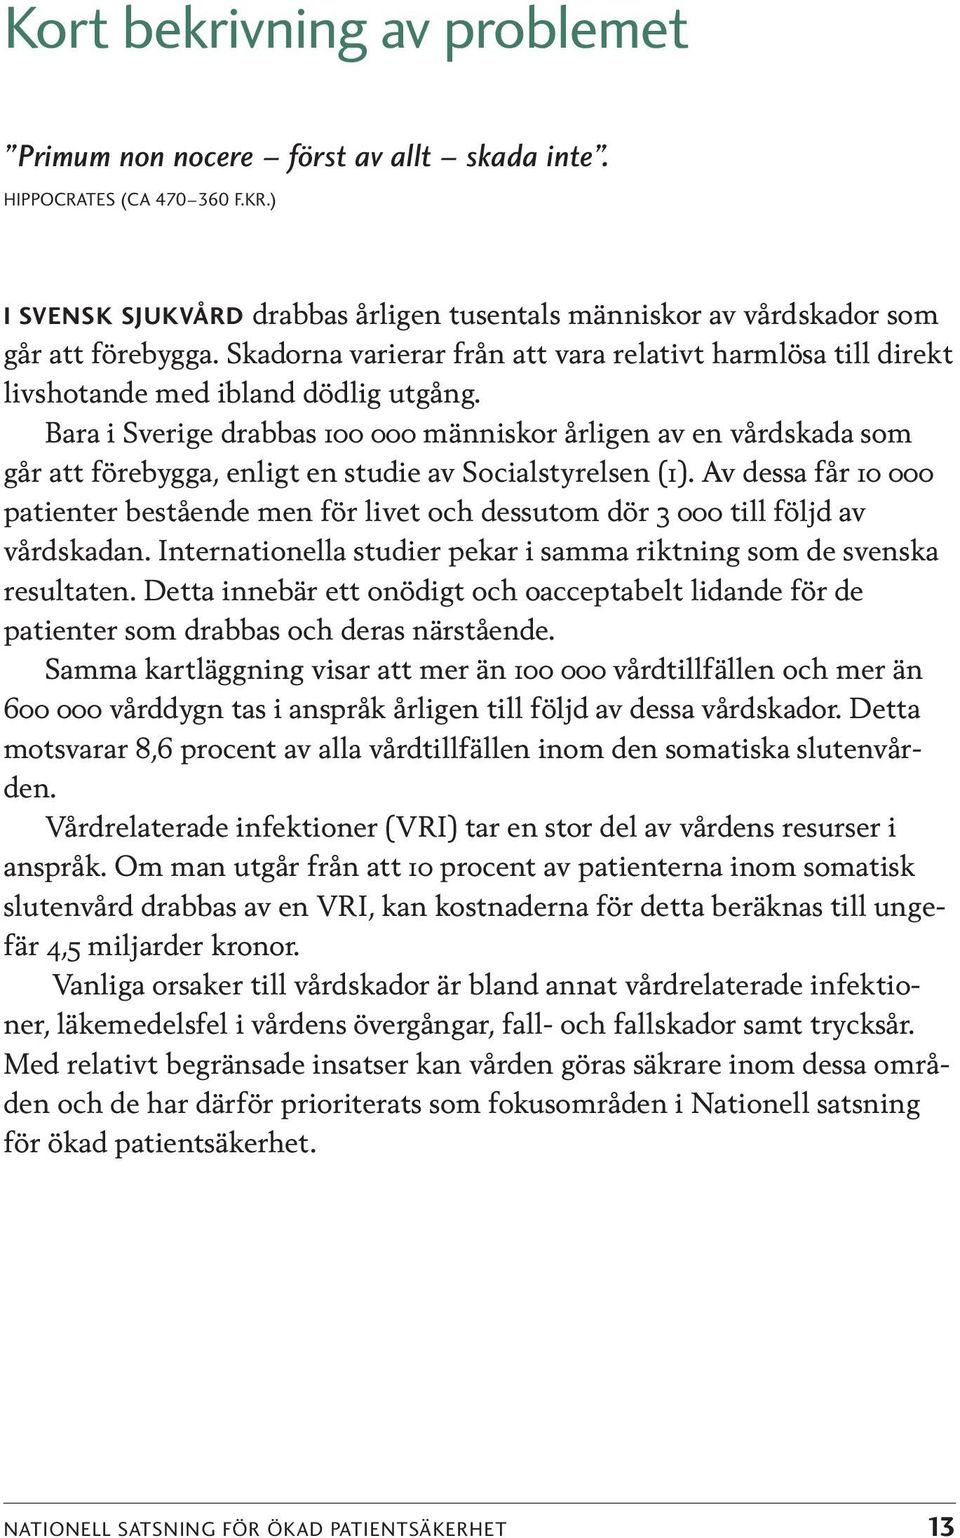 Baa i Sveige dabbas 100 000 människo åligen av en vådskada som gå att föebygga, enligt en studie av Socialstyelsen (1).